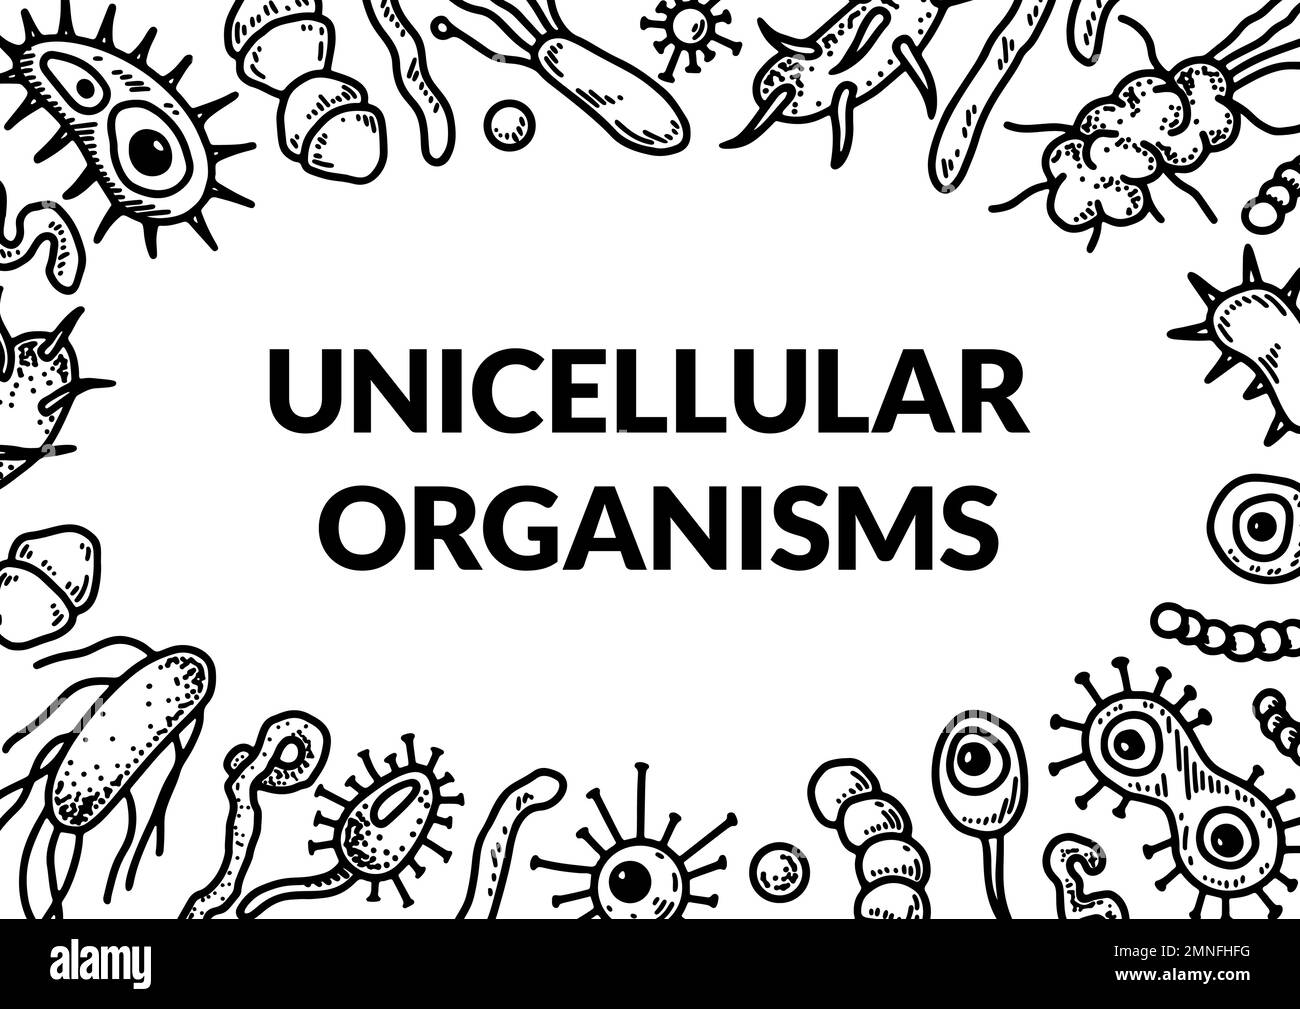 Conception d'organismes microscopiques unicellulaires. Illustration vectorielle de biologie scientifique en style esquisse Illustration de Vecteur